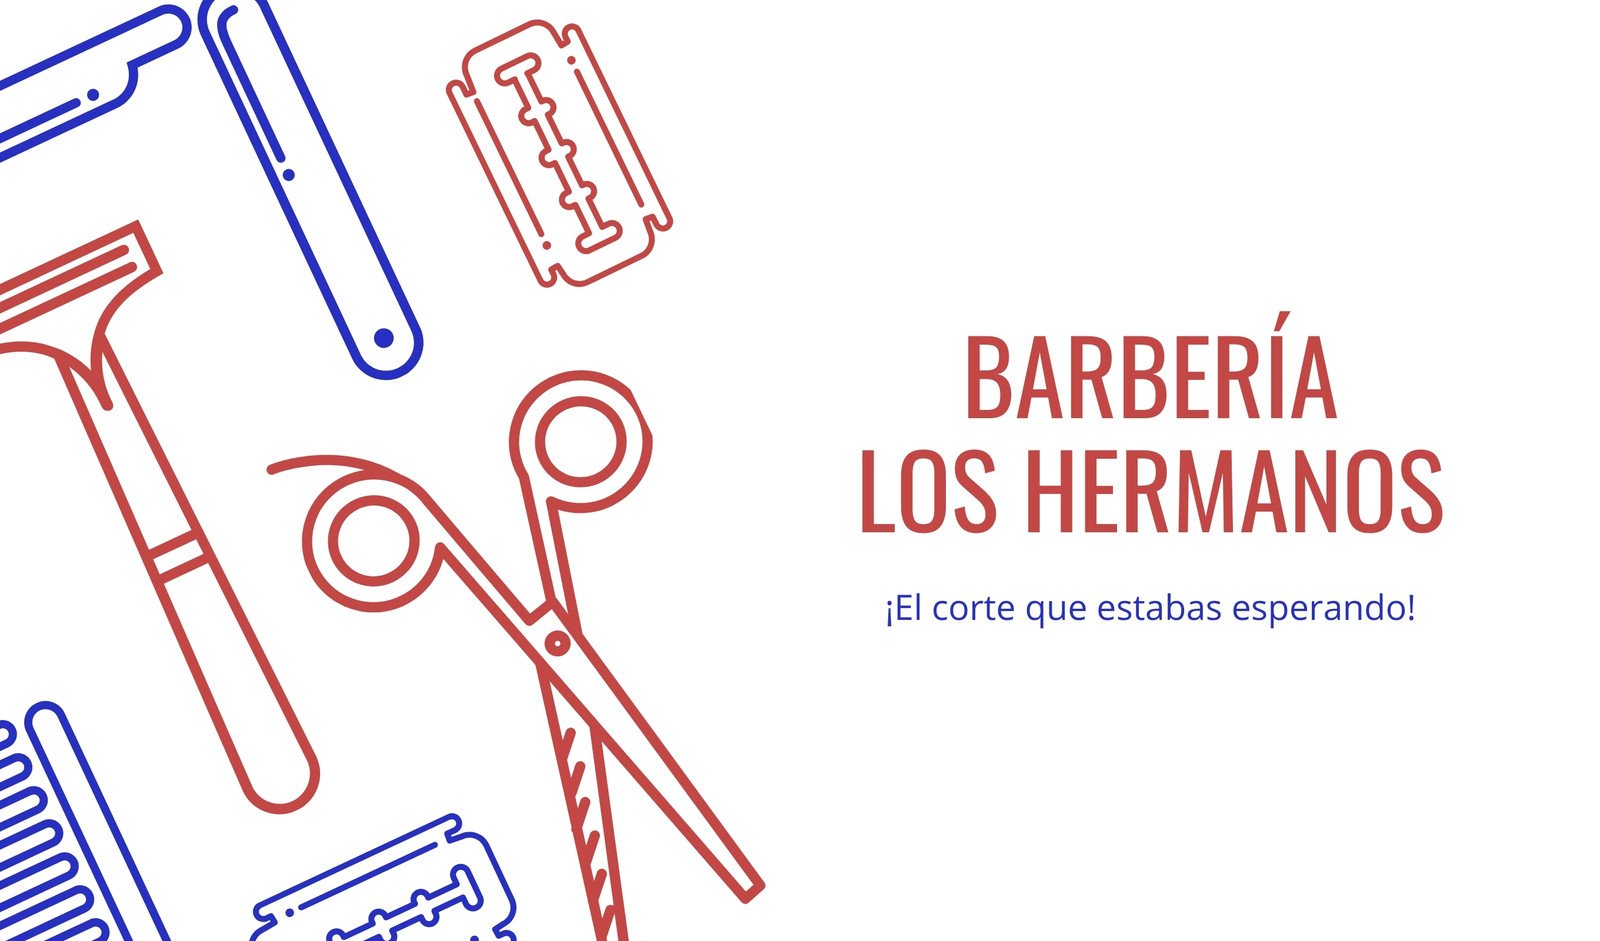 Plantillas de tarjetas de presentación para barbería | Canva